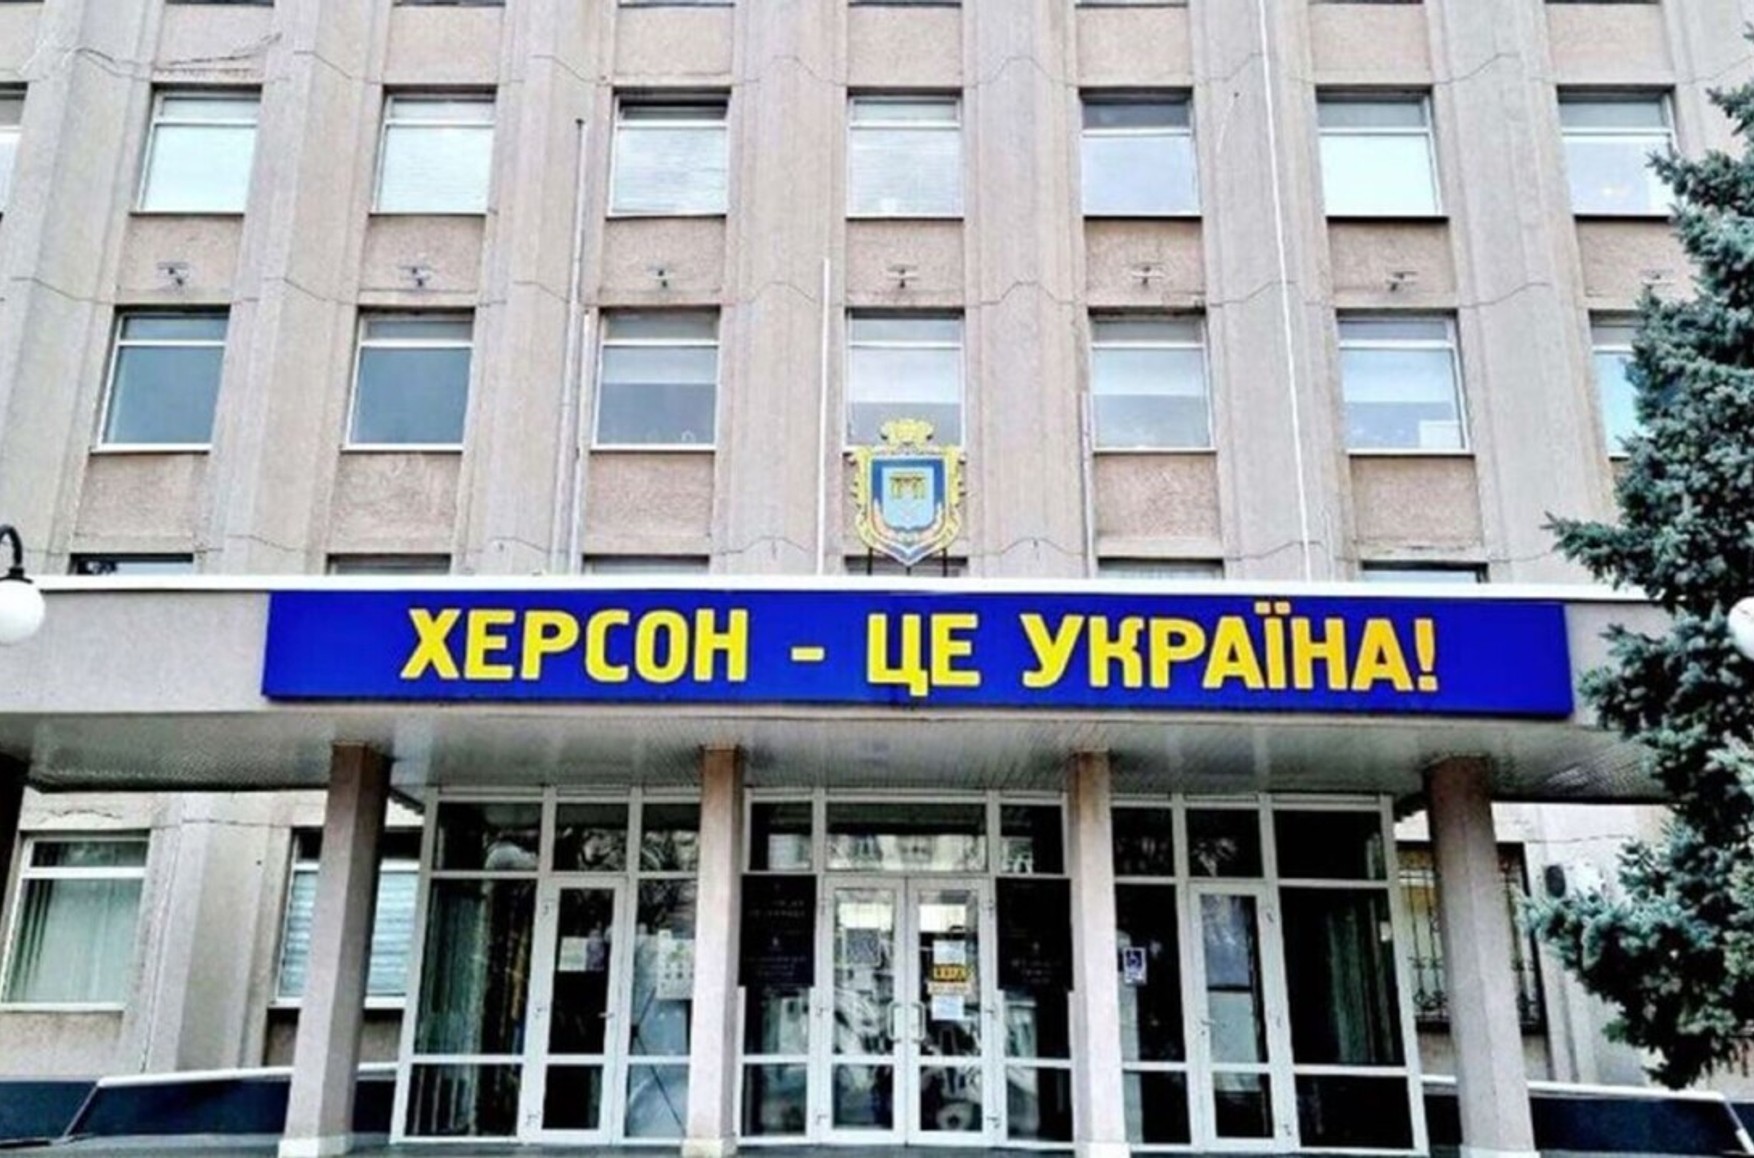 Херсон вернулся под контроль Украины, в город заходят части ВСУ — Министерство обороны Украины